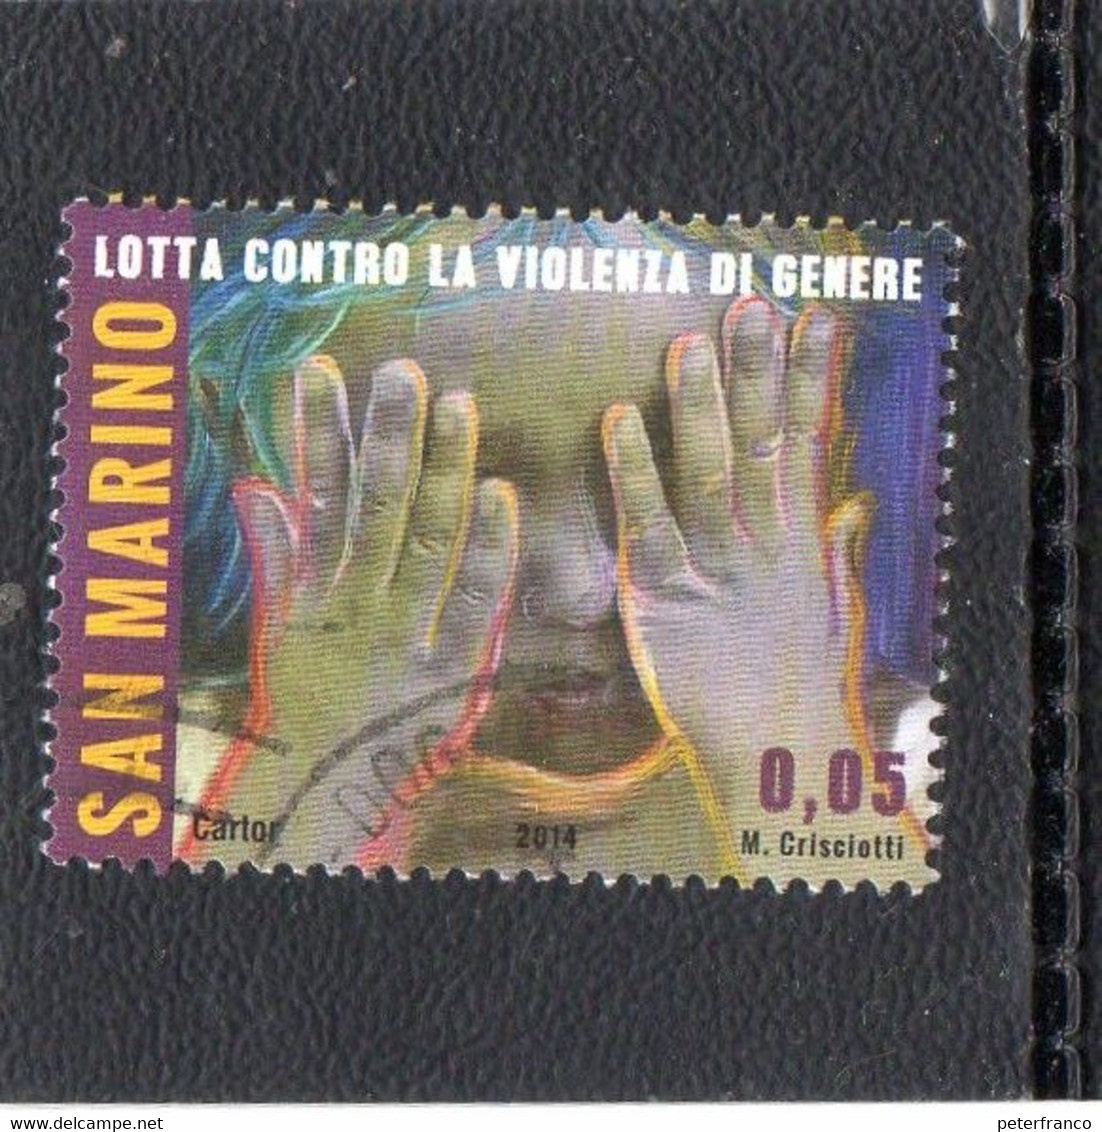 2014 San Marino - Lotta Contro Le Vielenze Di Genere - Used Stamps